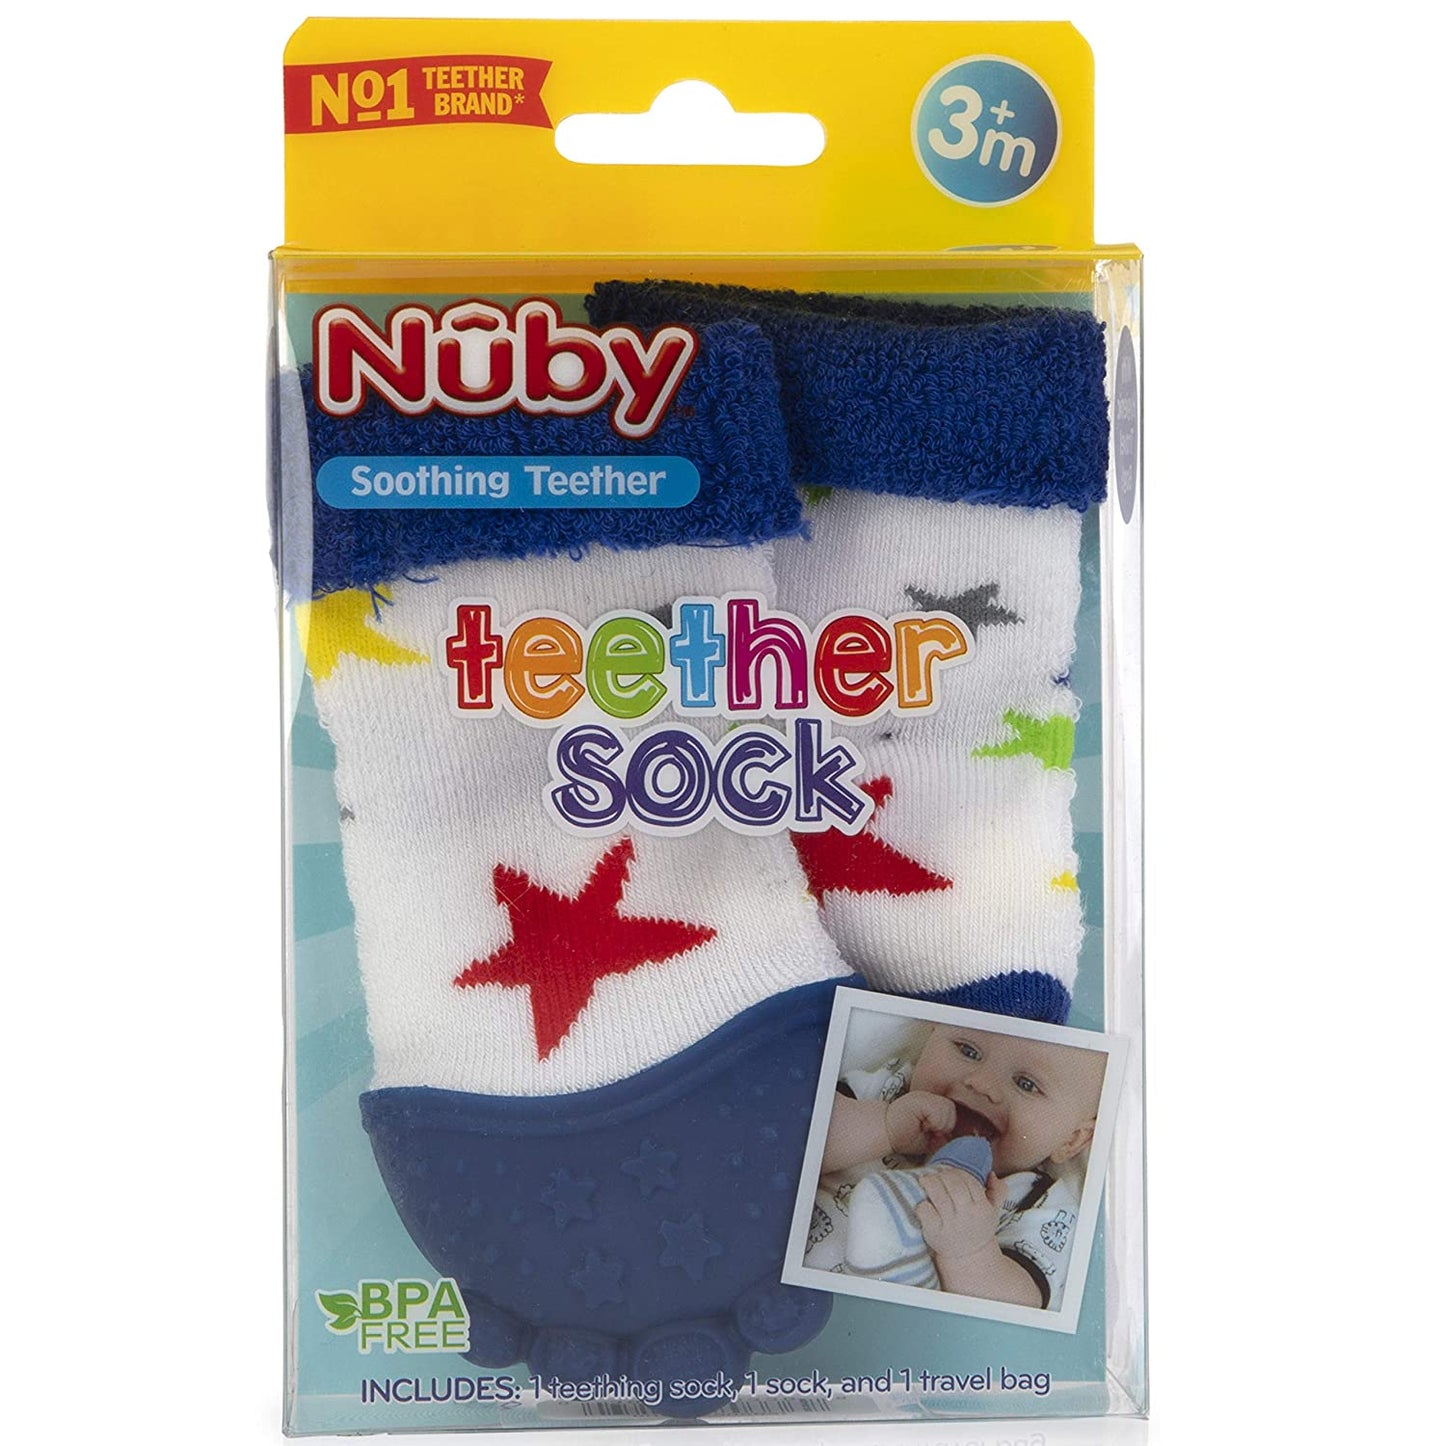 Nuby Soothing Teether Sock, Grey Shark, 5"